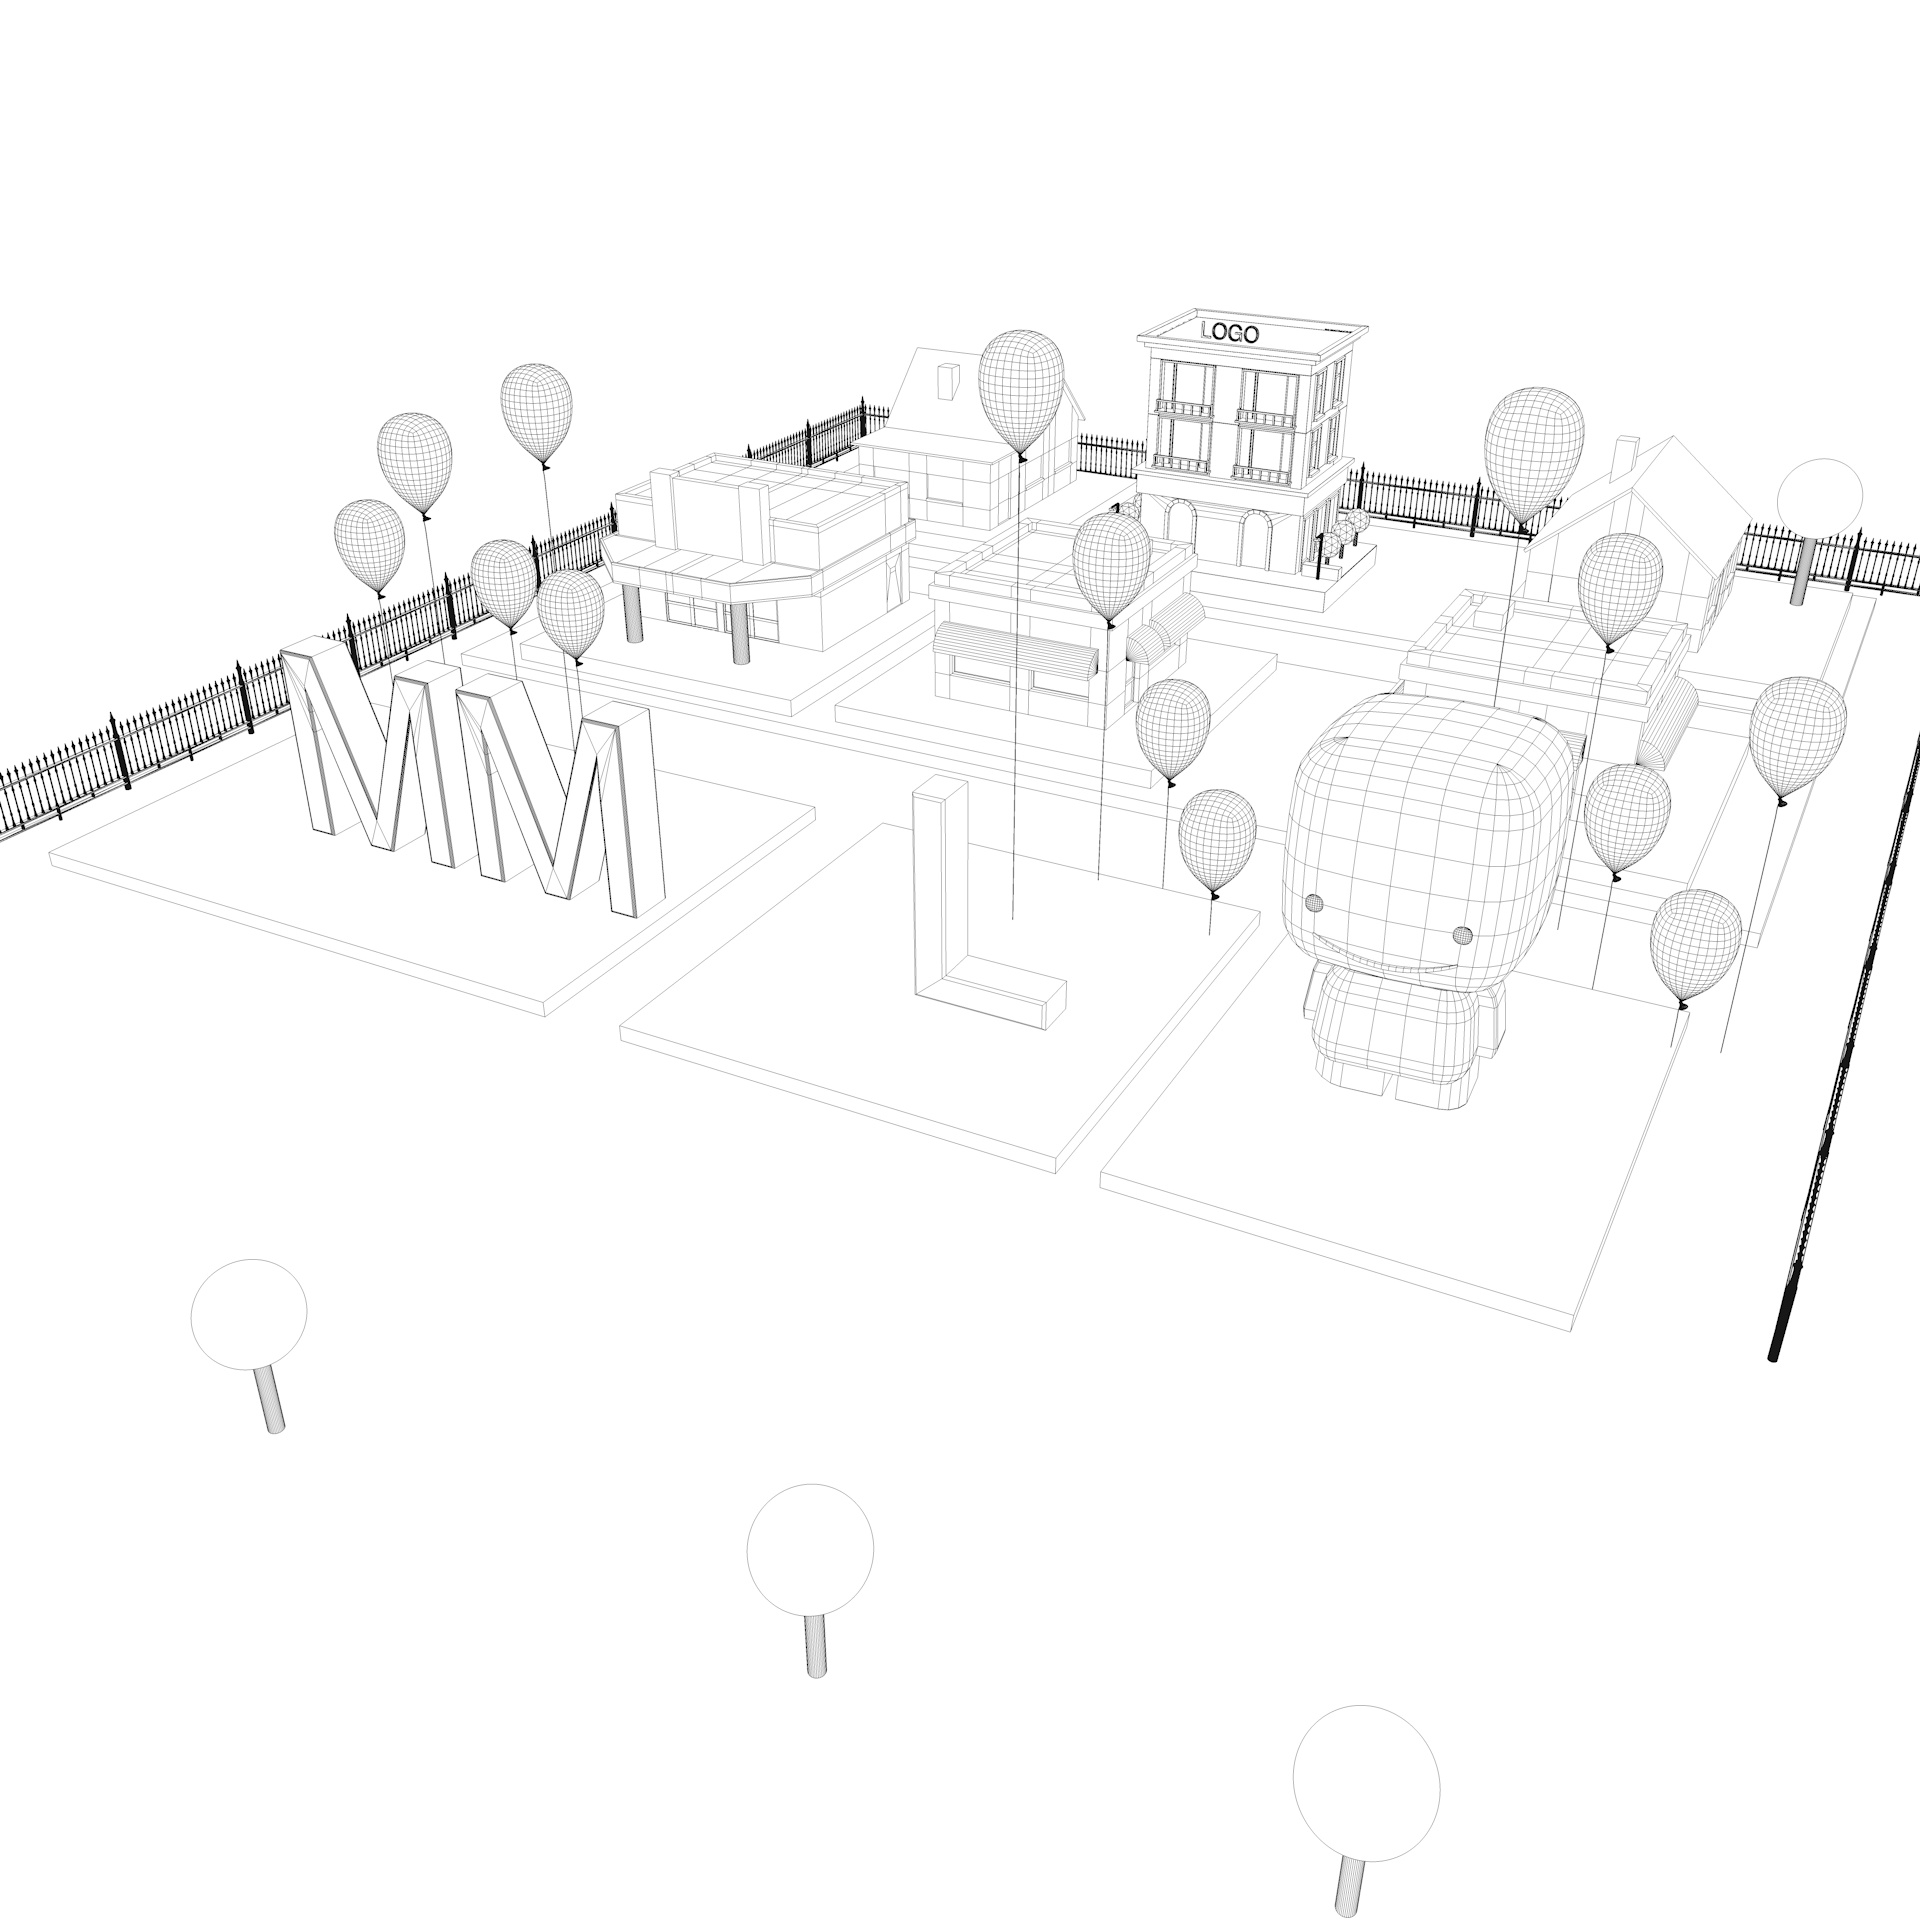 3D model stavbe skupnosti risank